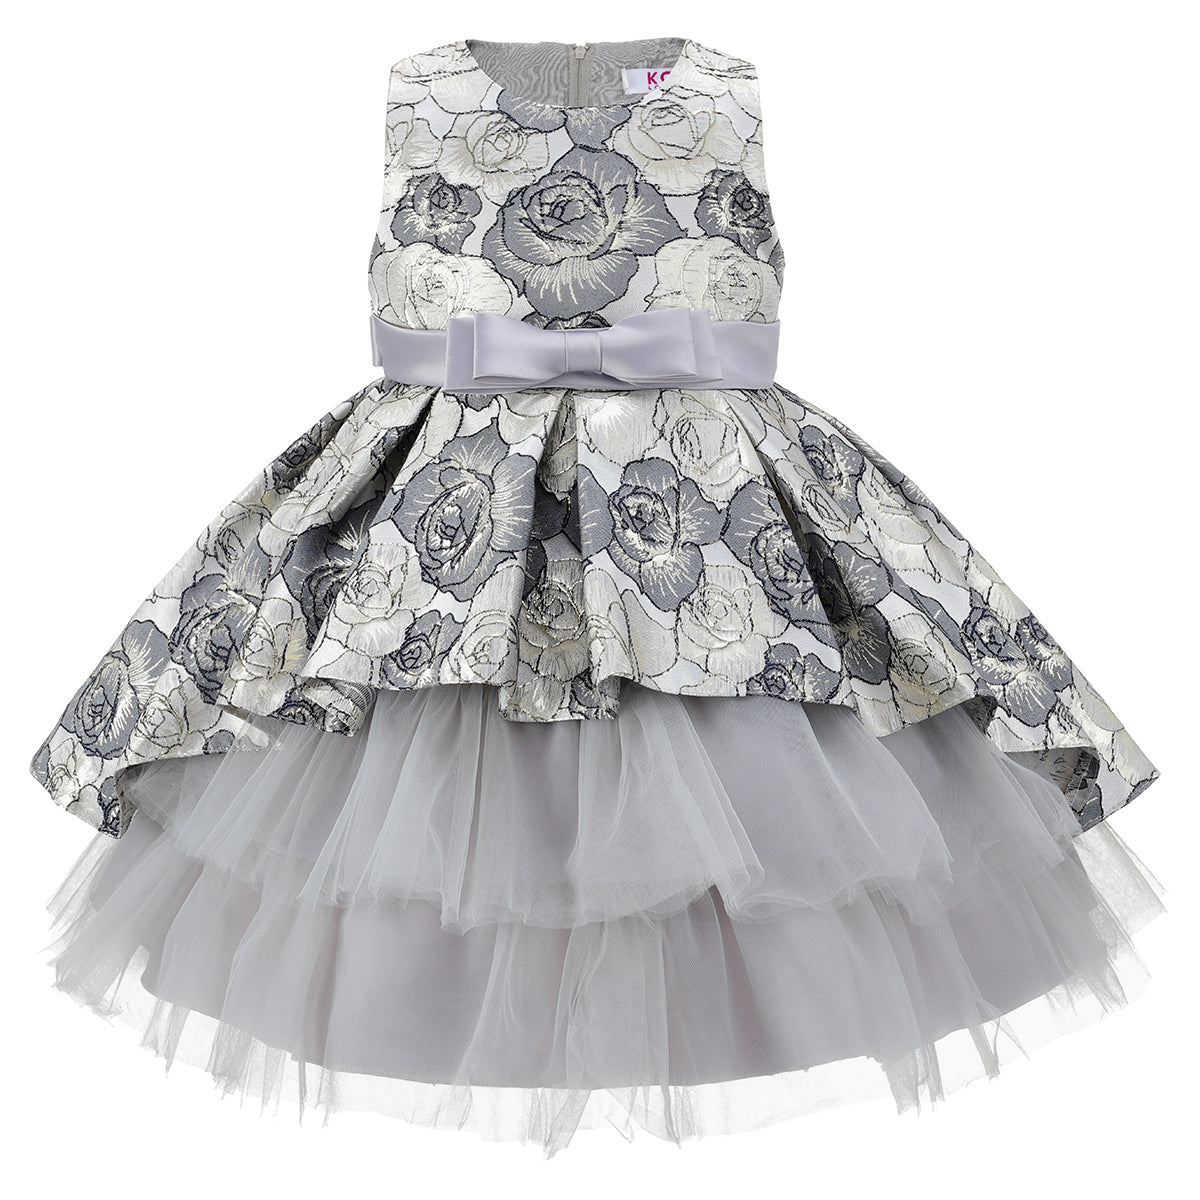 Silver Floral Peplum Contrast Dress, BONBONS BOUTIQUES LTD